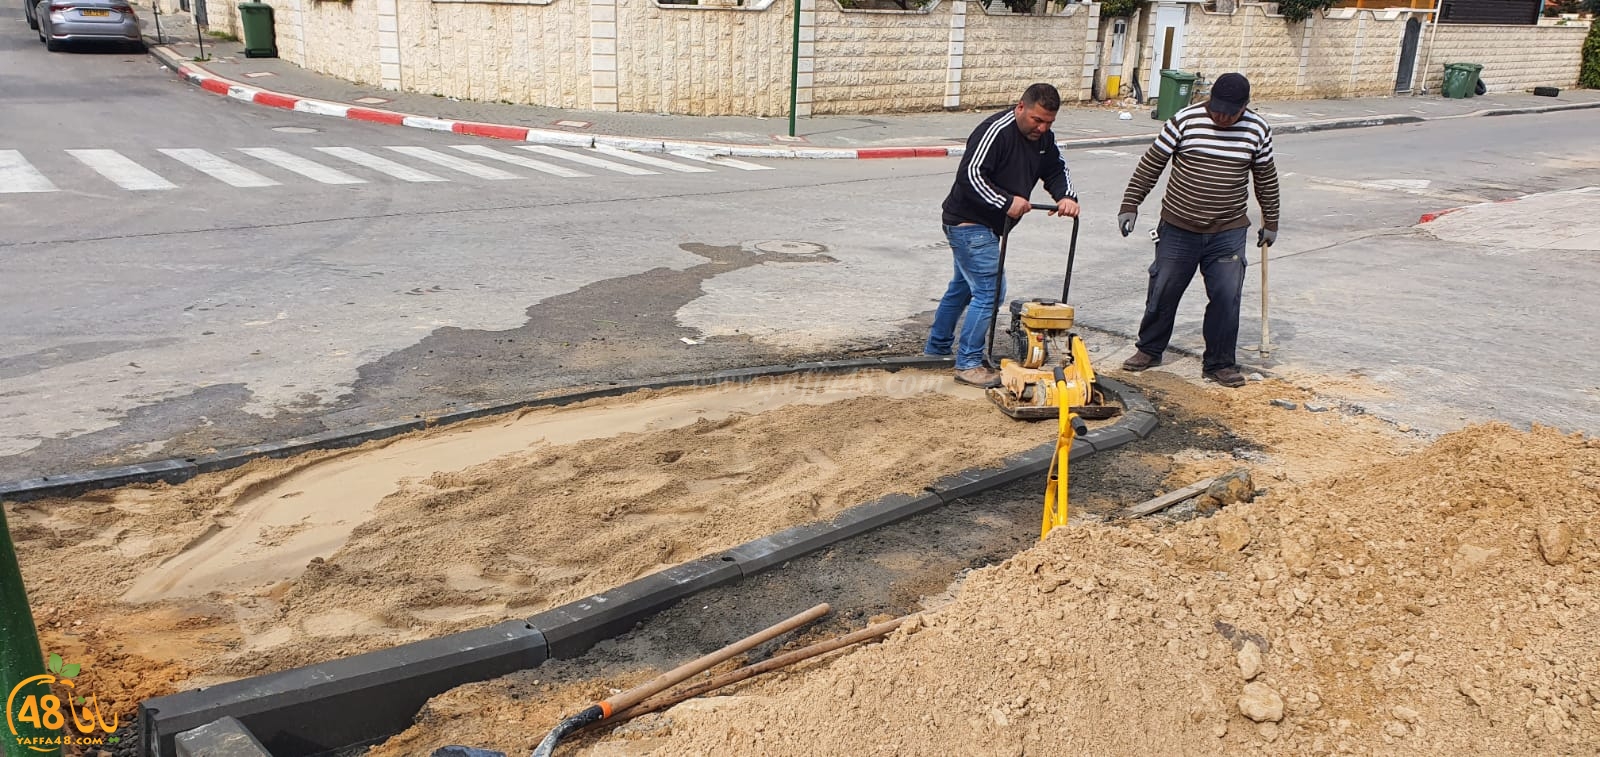  اللد: البلدية تُباشر بأعمال ترميم في شوارع حي الواحة الخضراء 